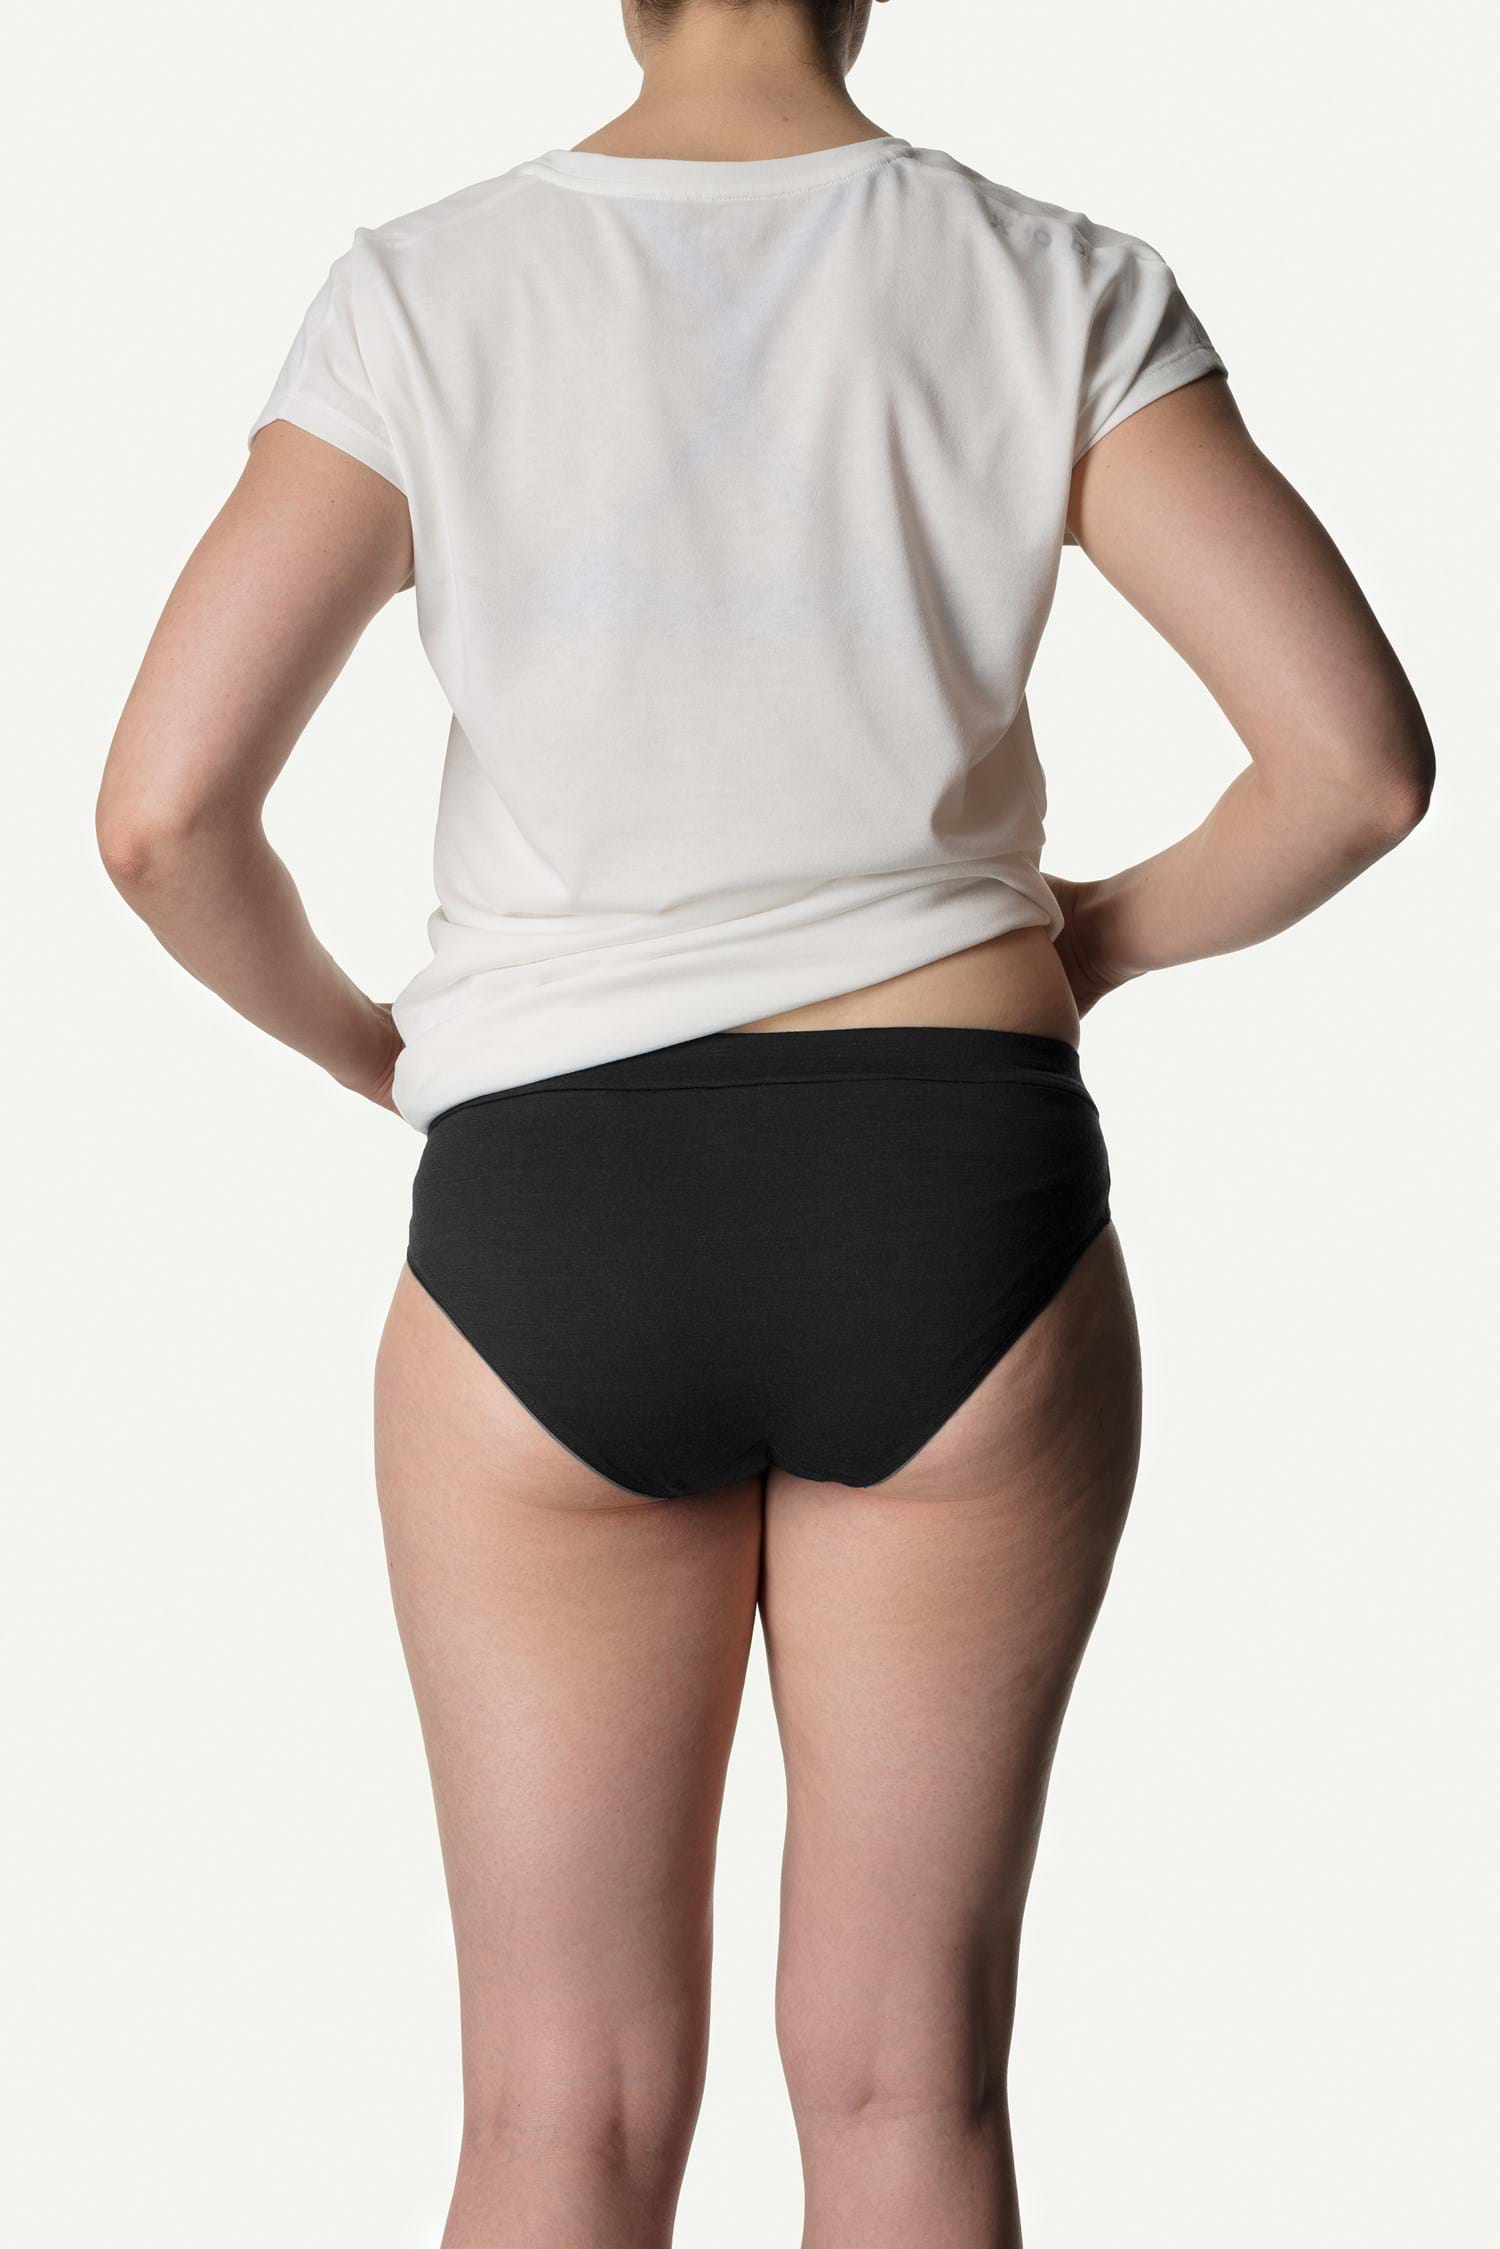 Merino Wool Underwear for Women